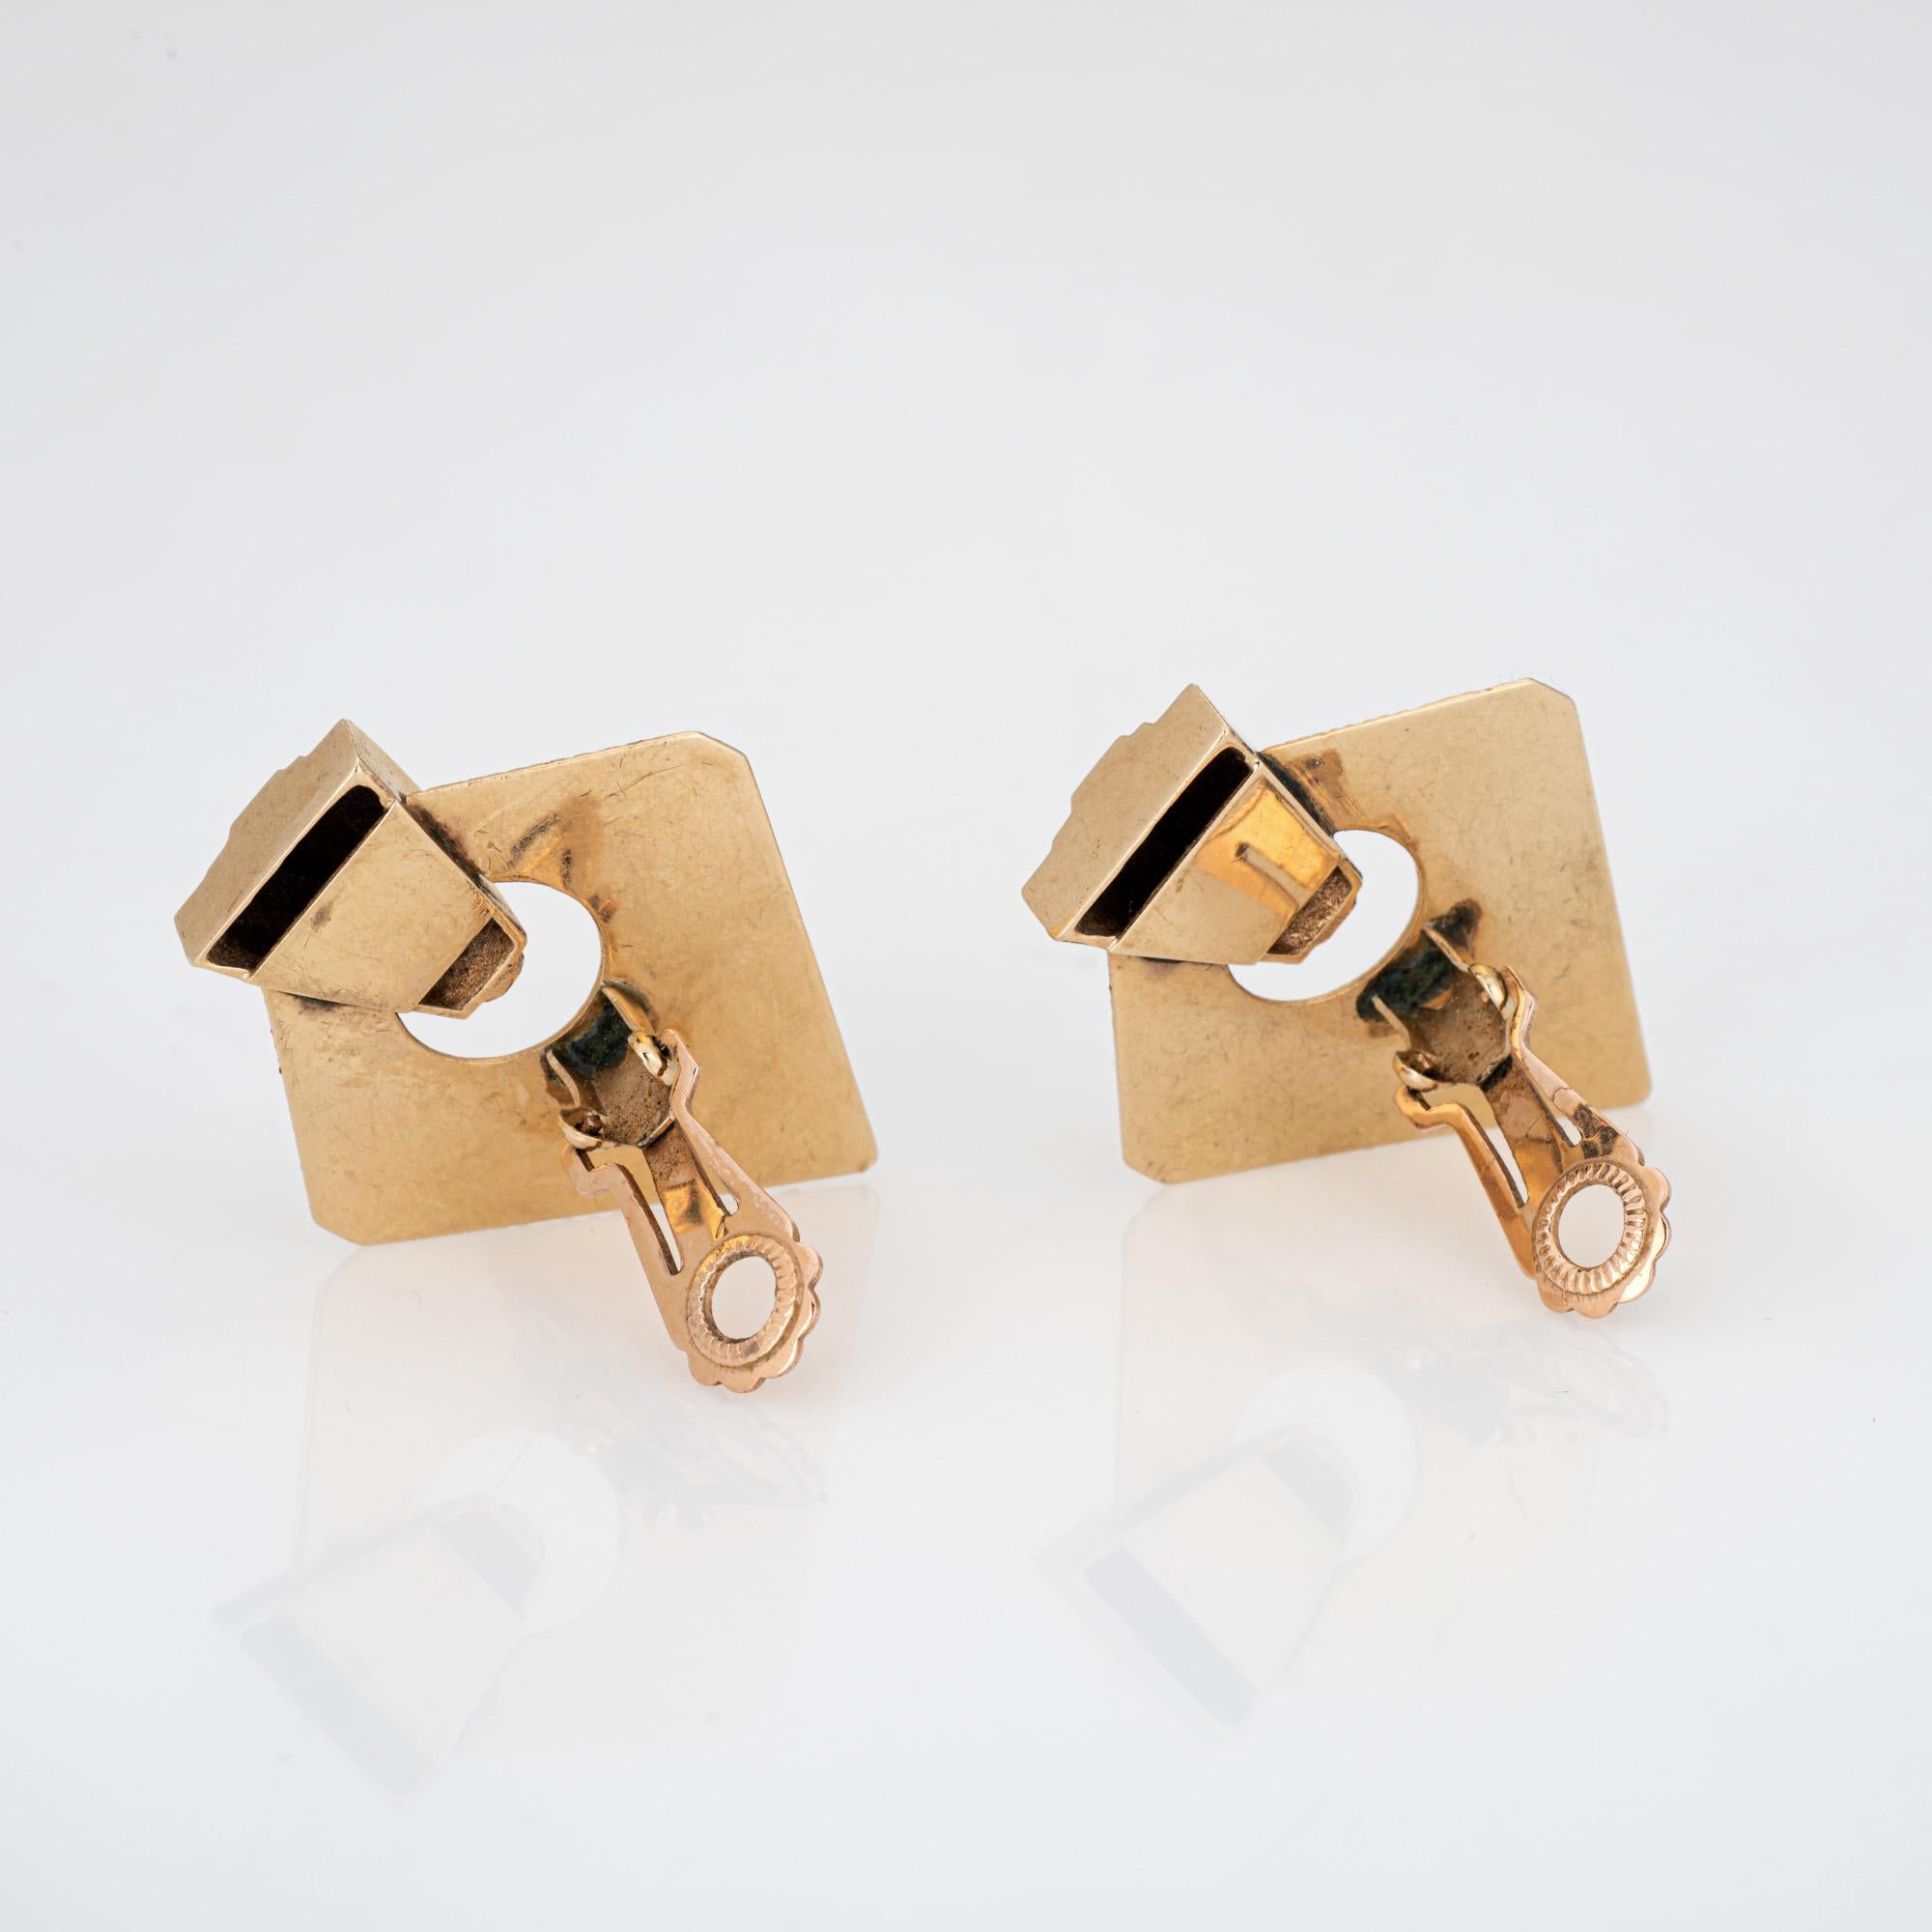 Elegantes Paar Retro-Kombi aus 14k Weißgold (ca. 1940er bis 1950er Jahre). 

Die stilvollen Ohrringe sind in einem dreieckigen Motiv mit geriffelter Oberfläche gestaltet. Mit einer Länge von 1 1/2 Zoll sind die Ohrringe ein gewagtes Statement,